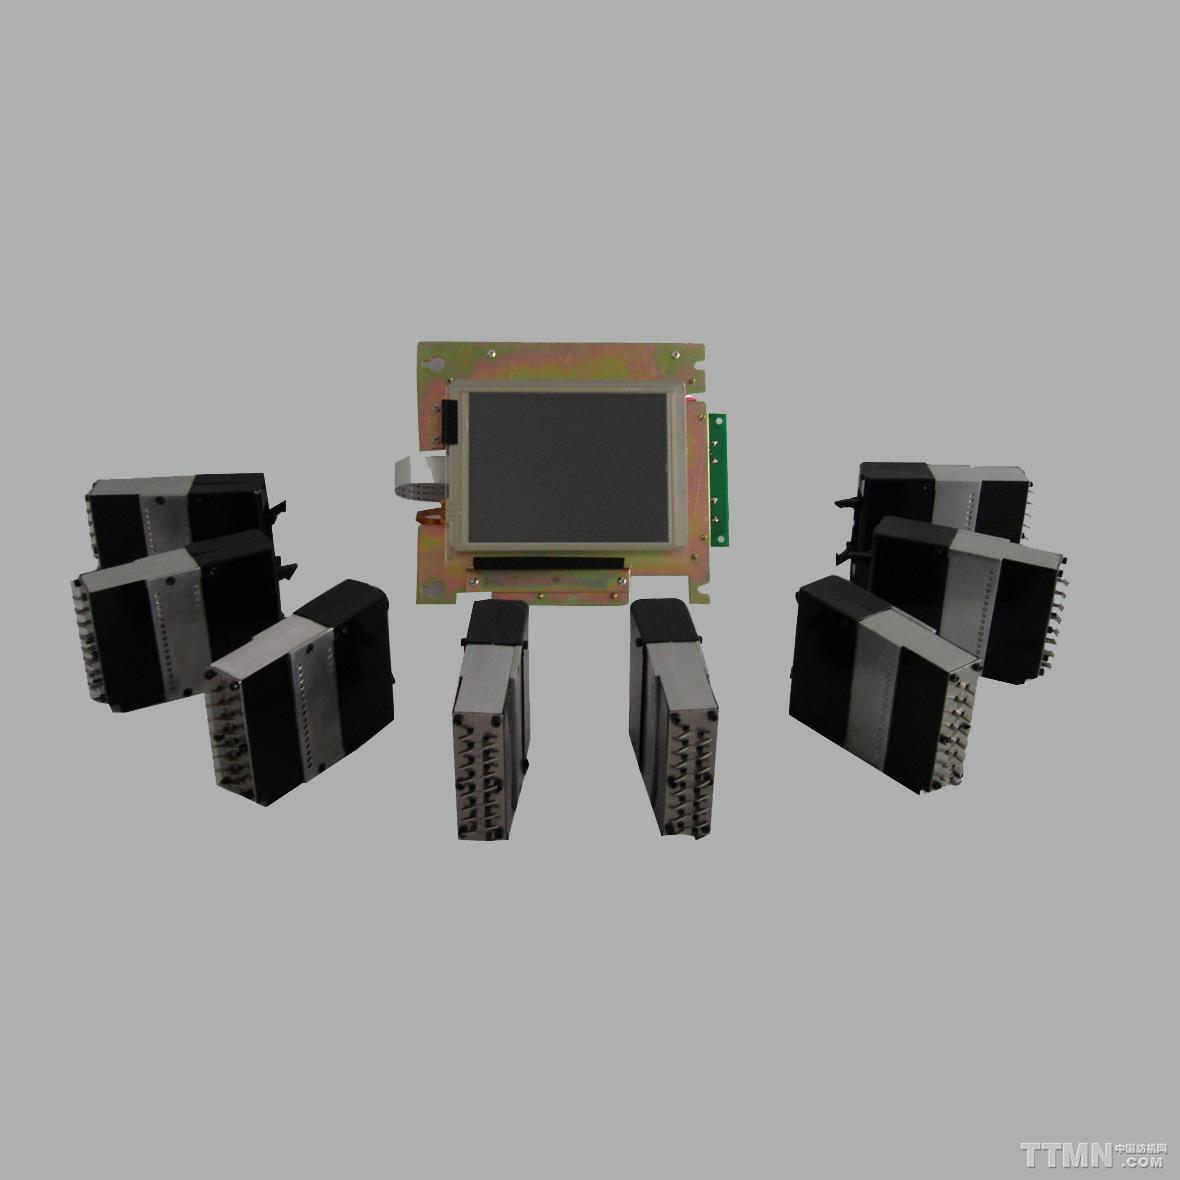 3功位(兼容)WAC3800电脑选针器系统